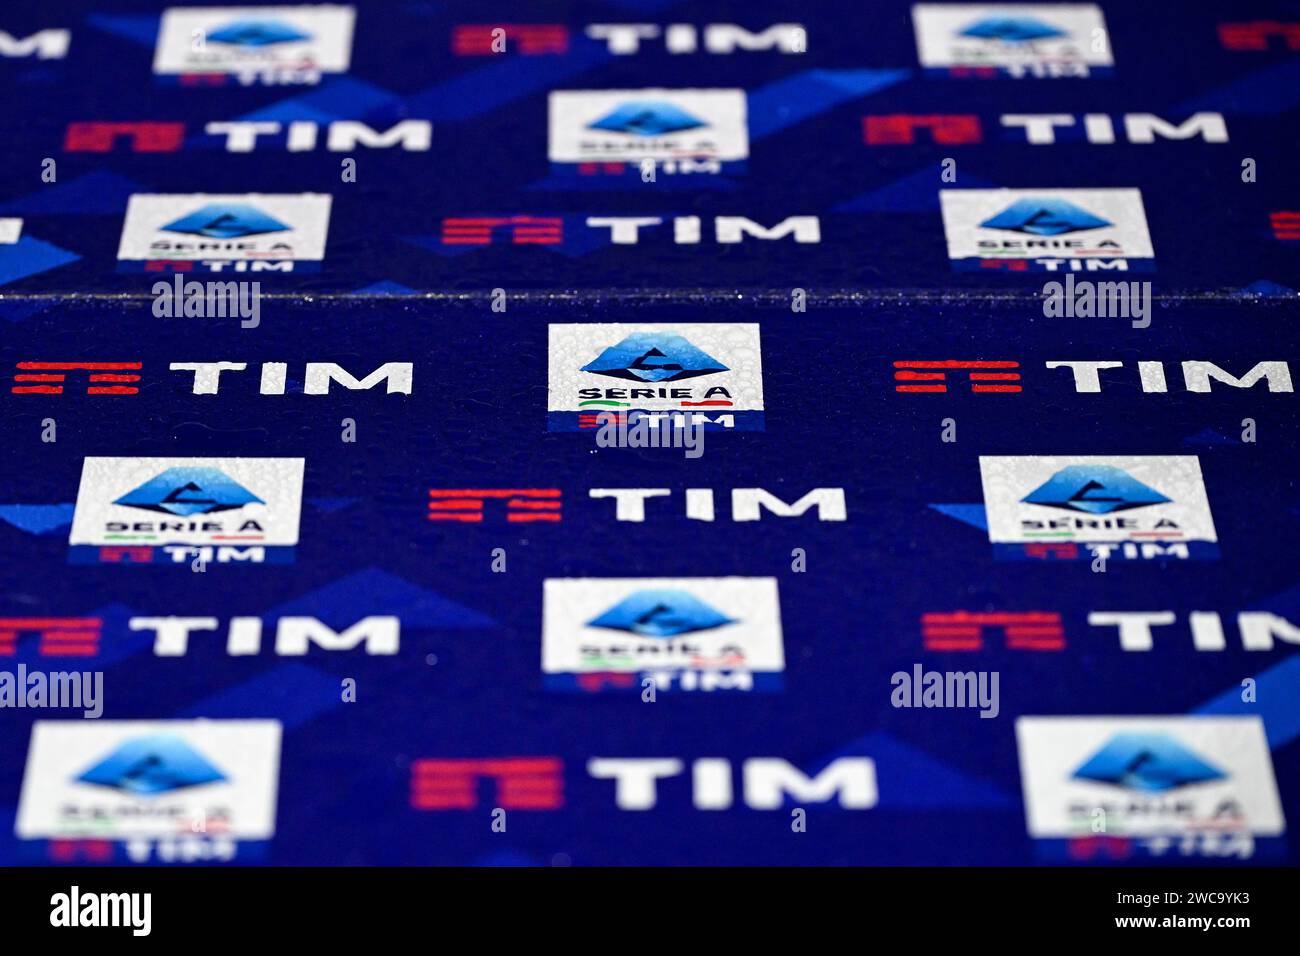 Une série de Serie A et Serie A sponsor principal Tim, Telecom Italia Mobile, logos sont vus sur un panneau d'affichage humide pendant le match de football Serie A entre ACF Fiorentina et Udinese Calcio au Stadio Artemio franchi à Florence, Italie, le 14 janvier 2023. Banque D'Images